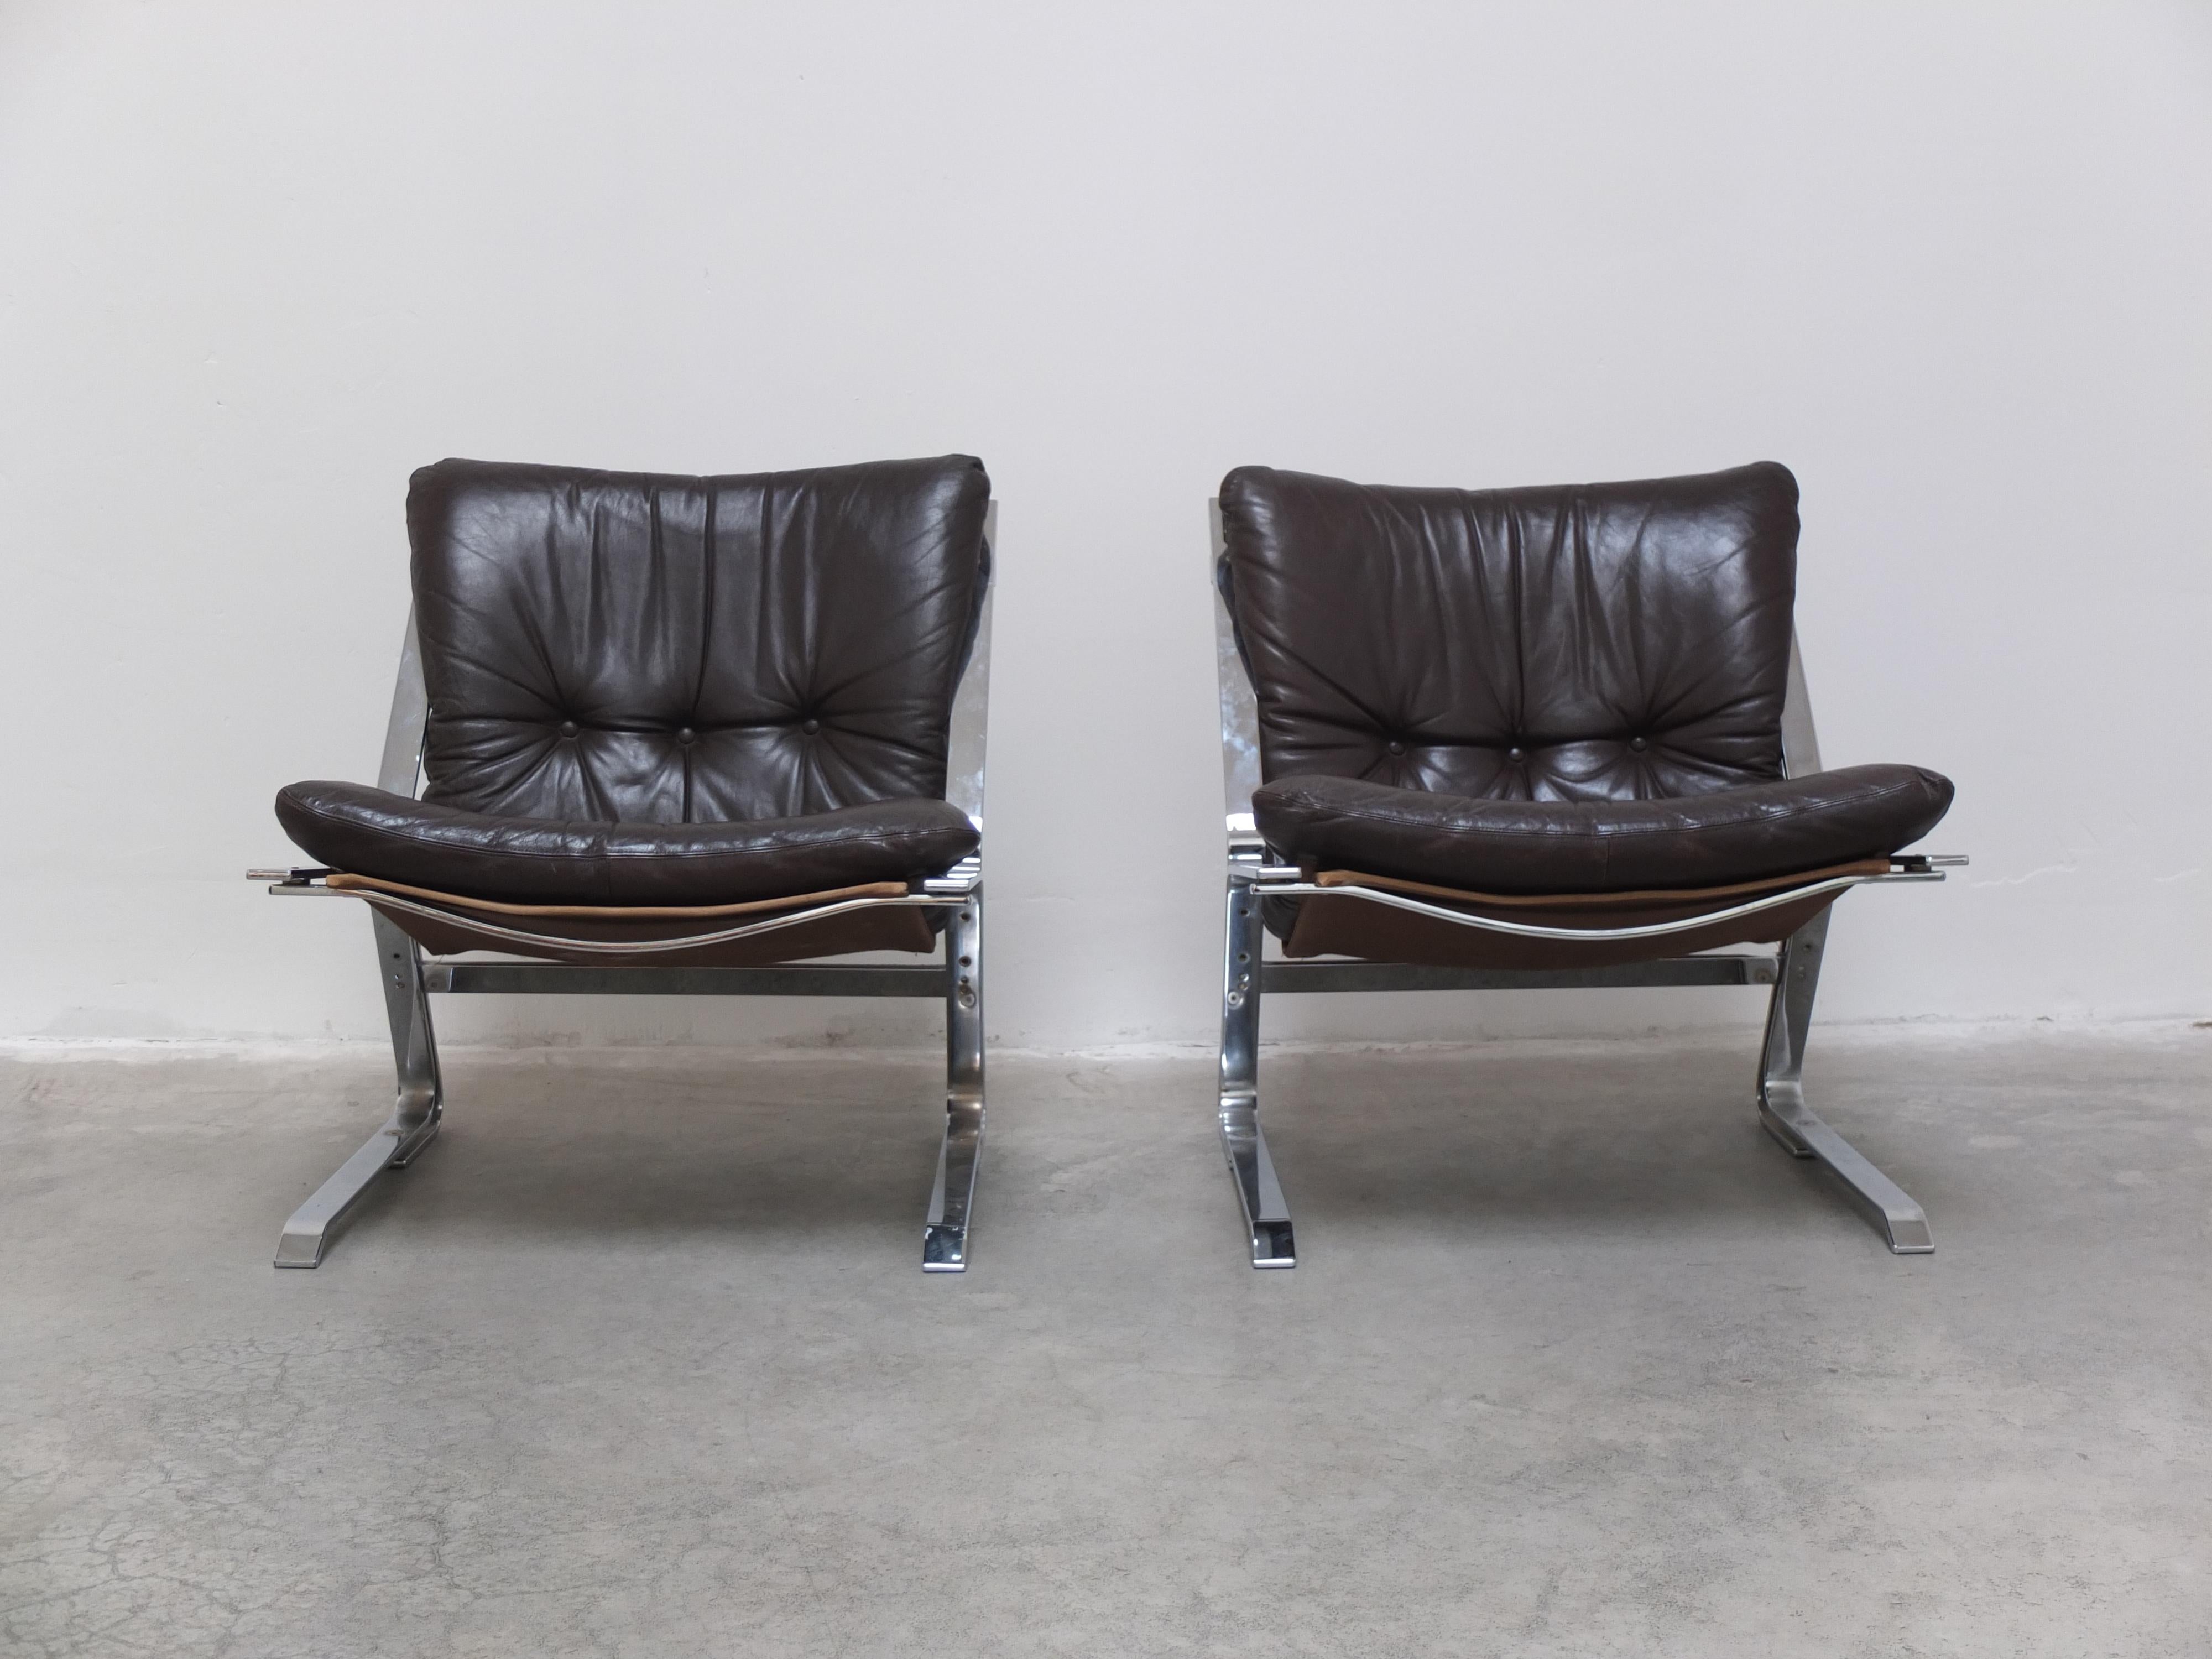 Magnifique paire de fauteuils conçus par Elsa & Nordahl Solheim pour Rybo Rykken and Co. en Norvège dans les années 1960. Un design très intéressant avec des cadres en acier plat chromé combinés à des coussins originaux et très doux en cuir brun